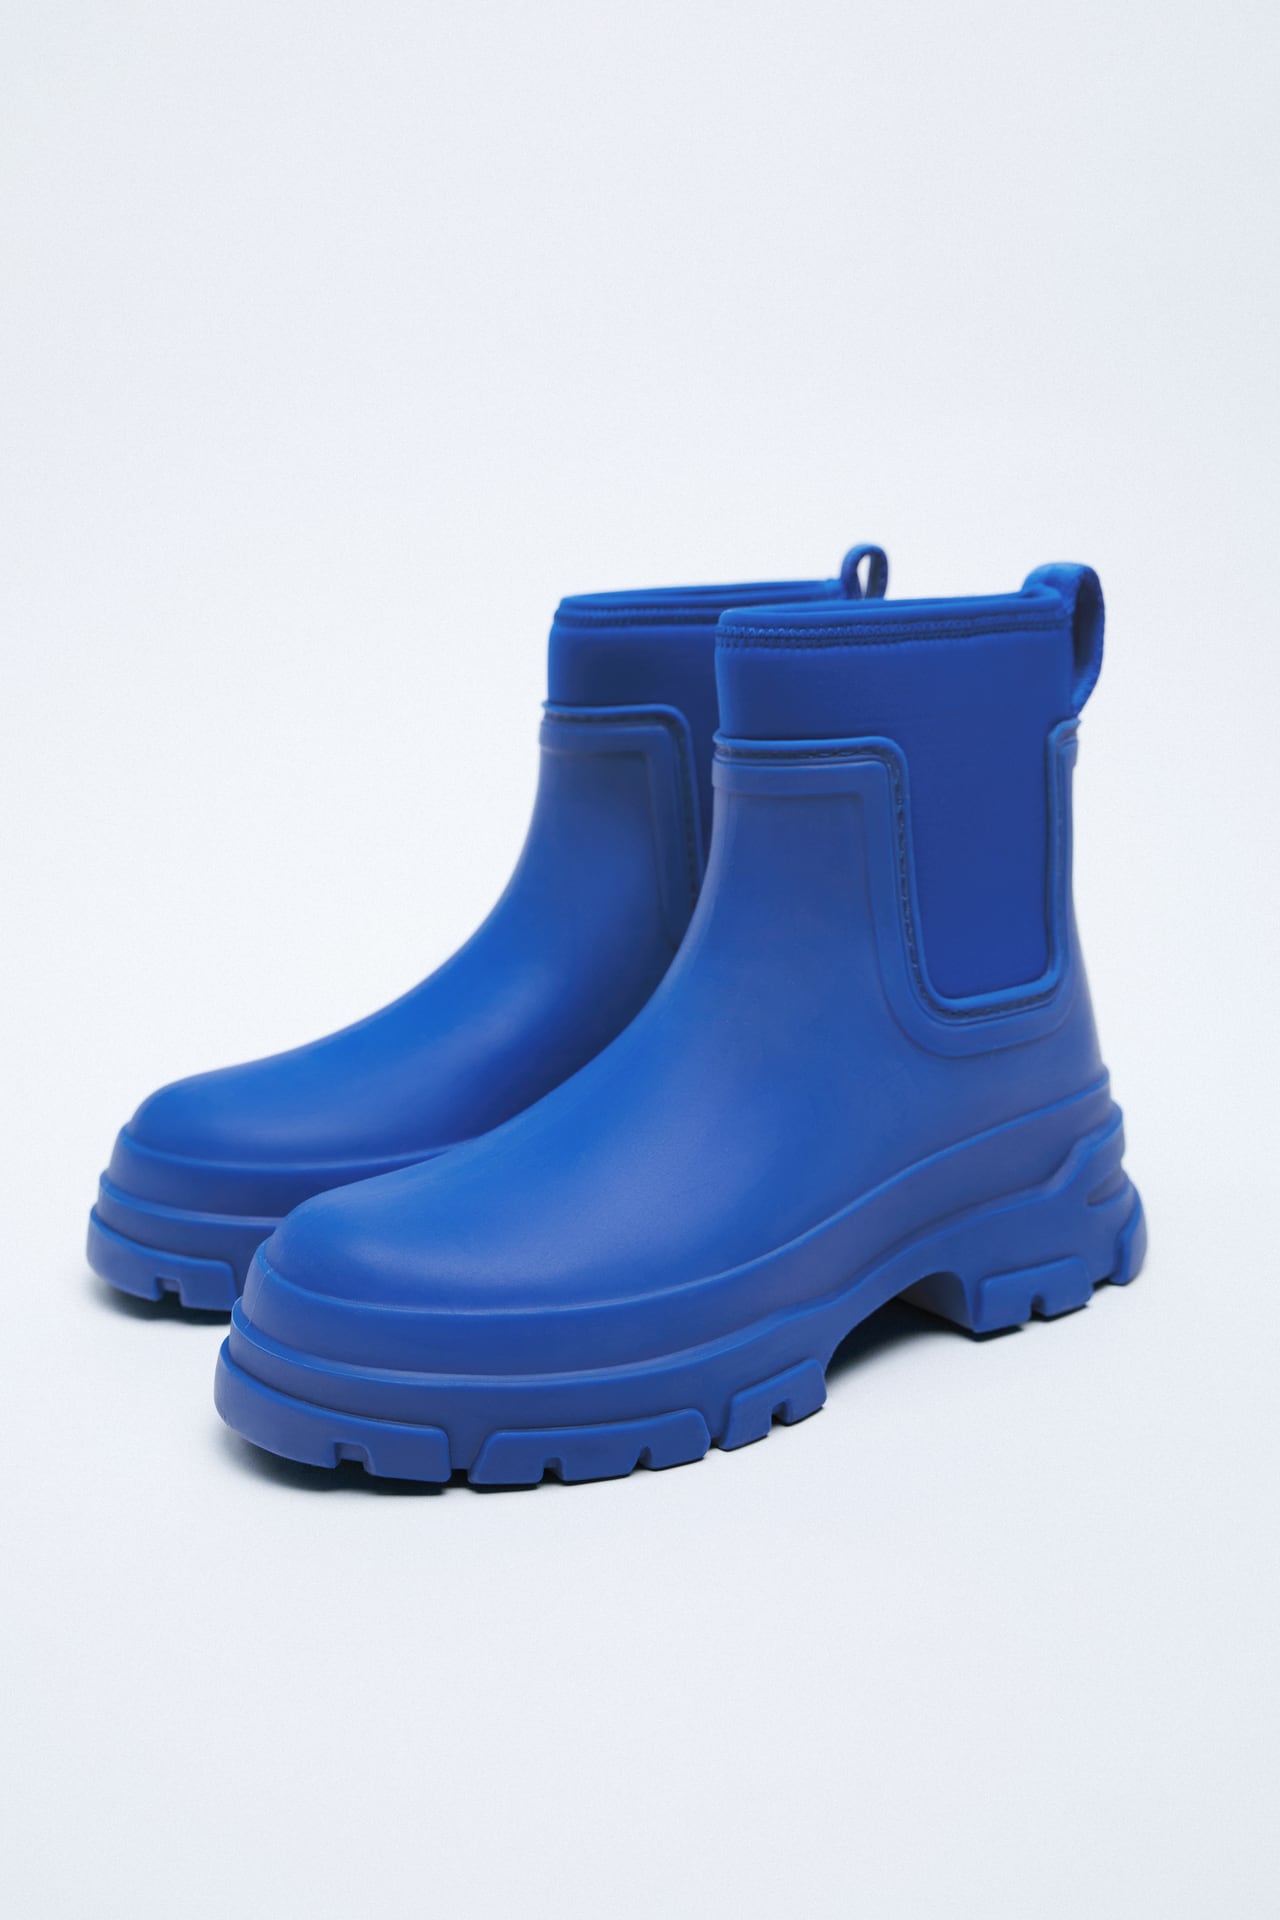 5 botas de agua low cost para protegerse de la lluvia de primavera